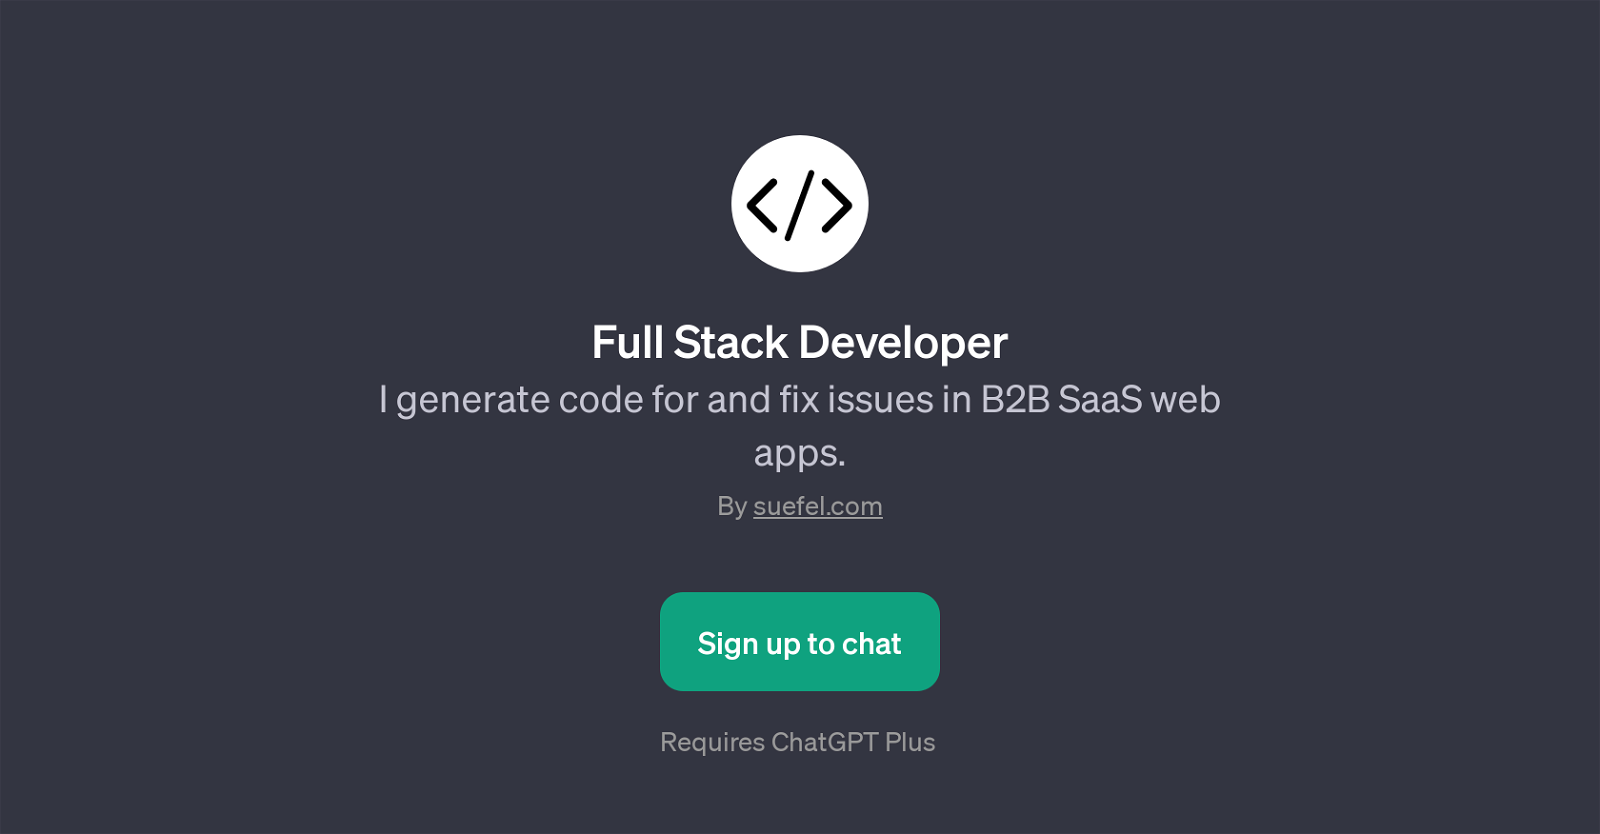 Full Stack Developer website